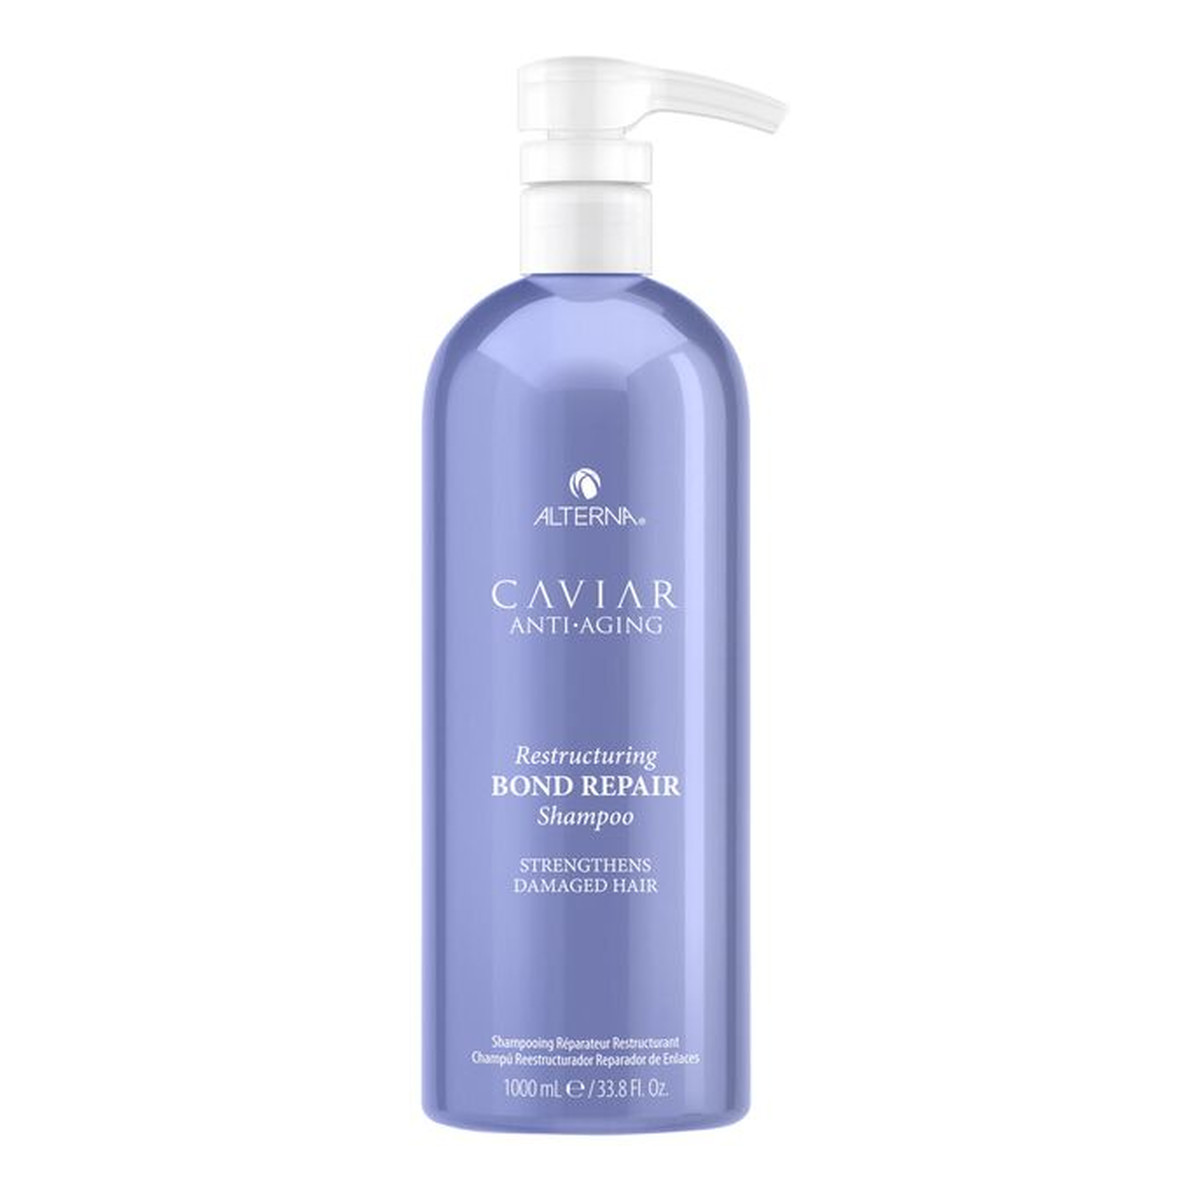 Alterna Caviar anti-aging restructuring bond repair shampoo szampon do włosów zniszczonych 1000ml